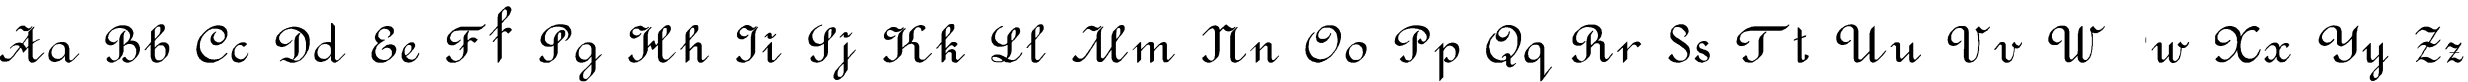 Пример написания английского алфавита шрифтом Rondo